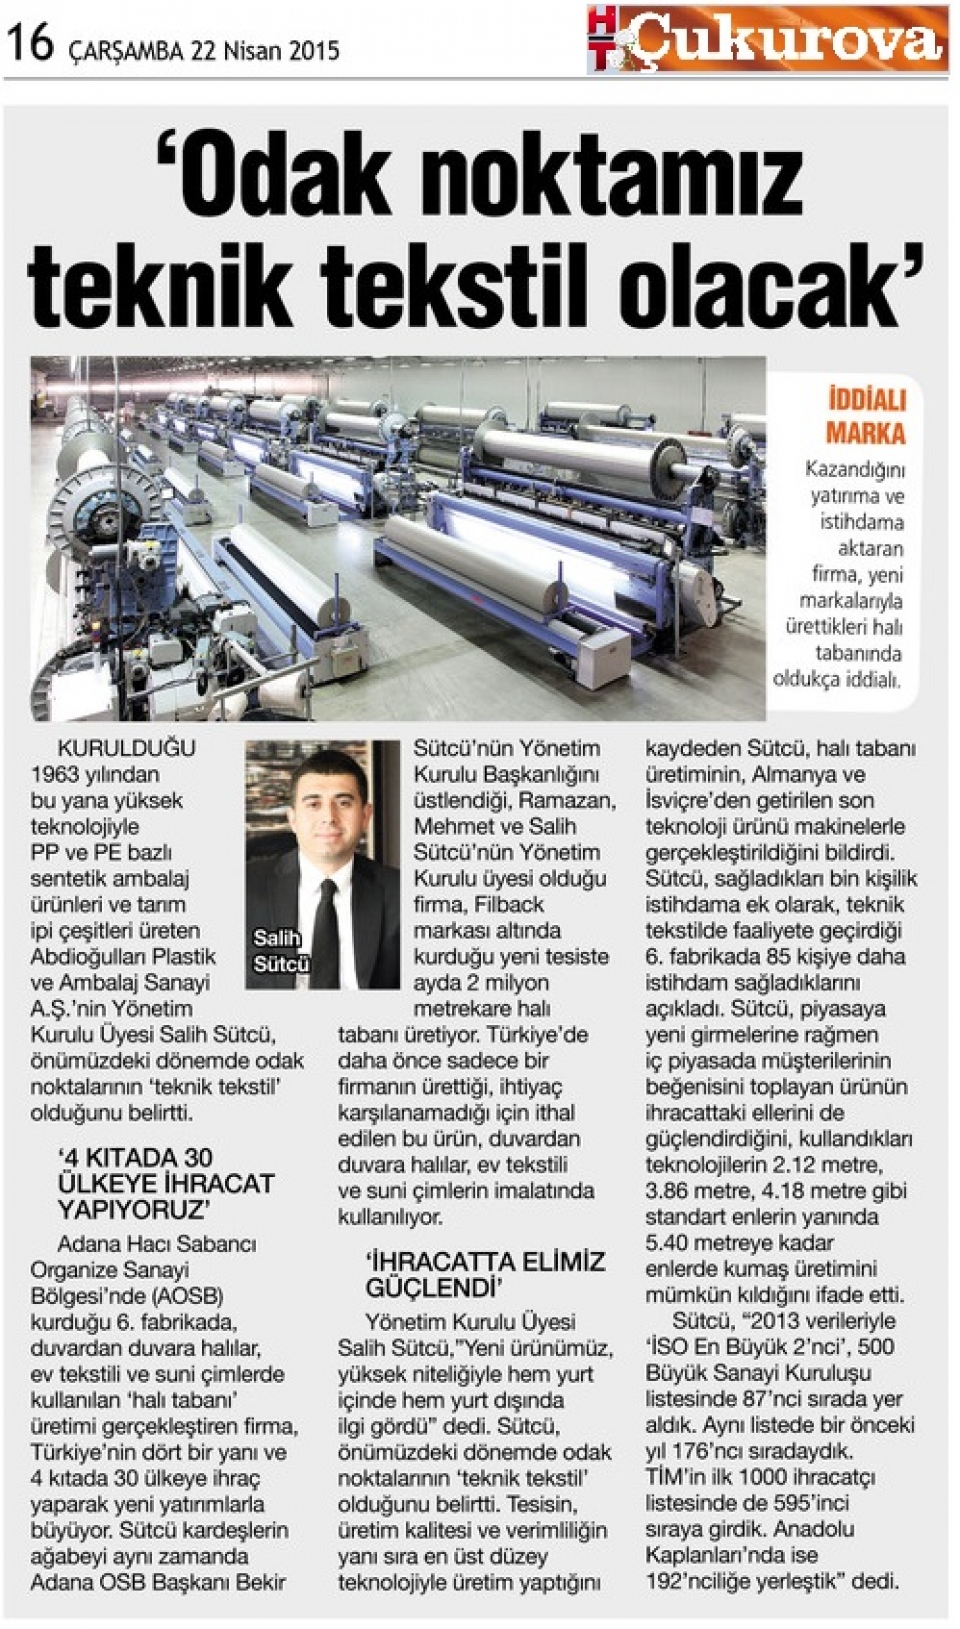 Haber Türk Gazetesi